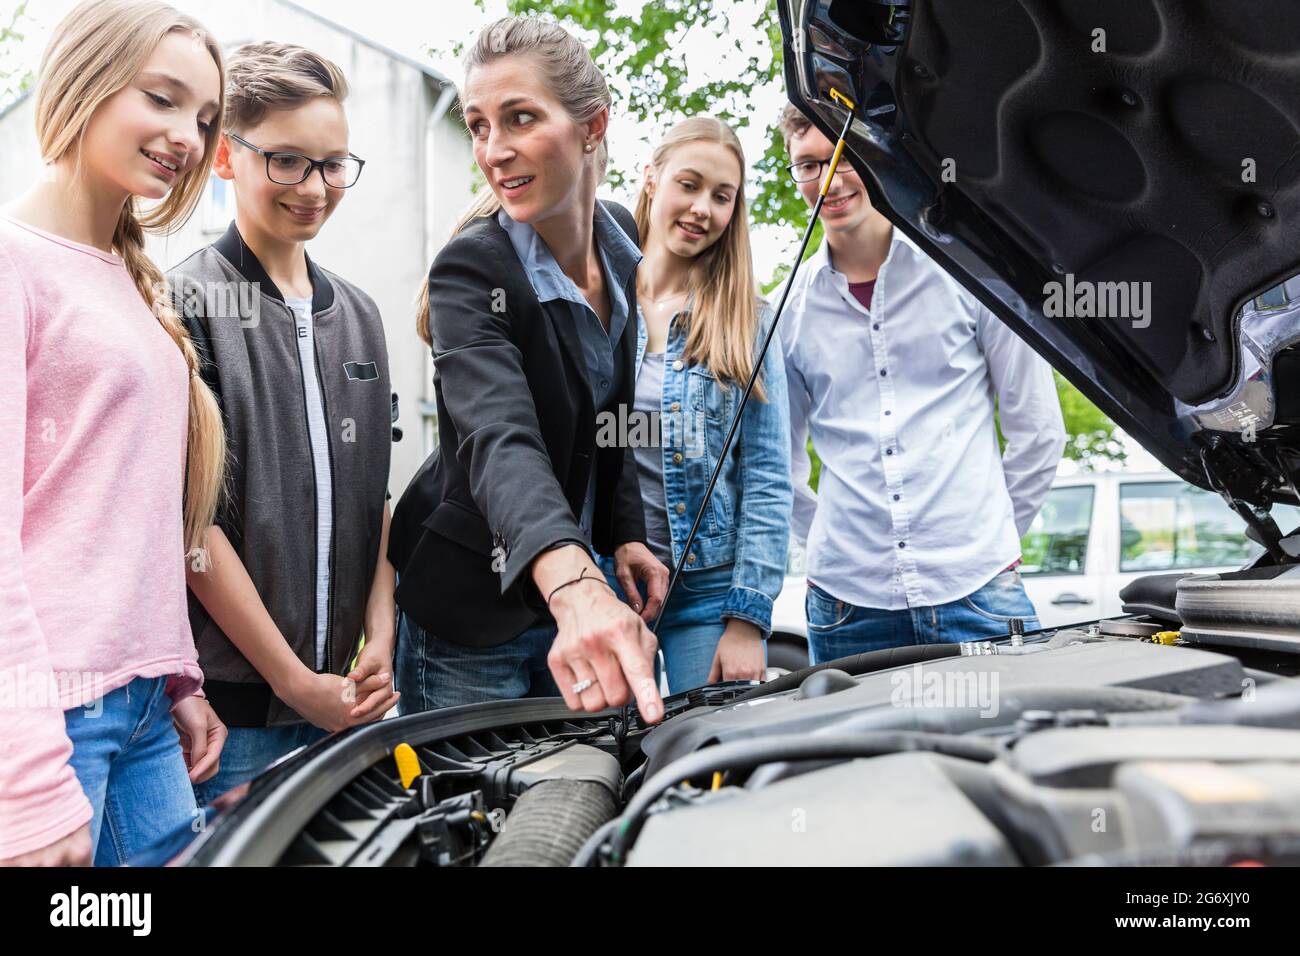 Profesor de conducción clase mostrando el motor del coche, lo que les permite mirar debajo del capó Foto de stock